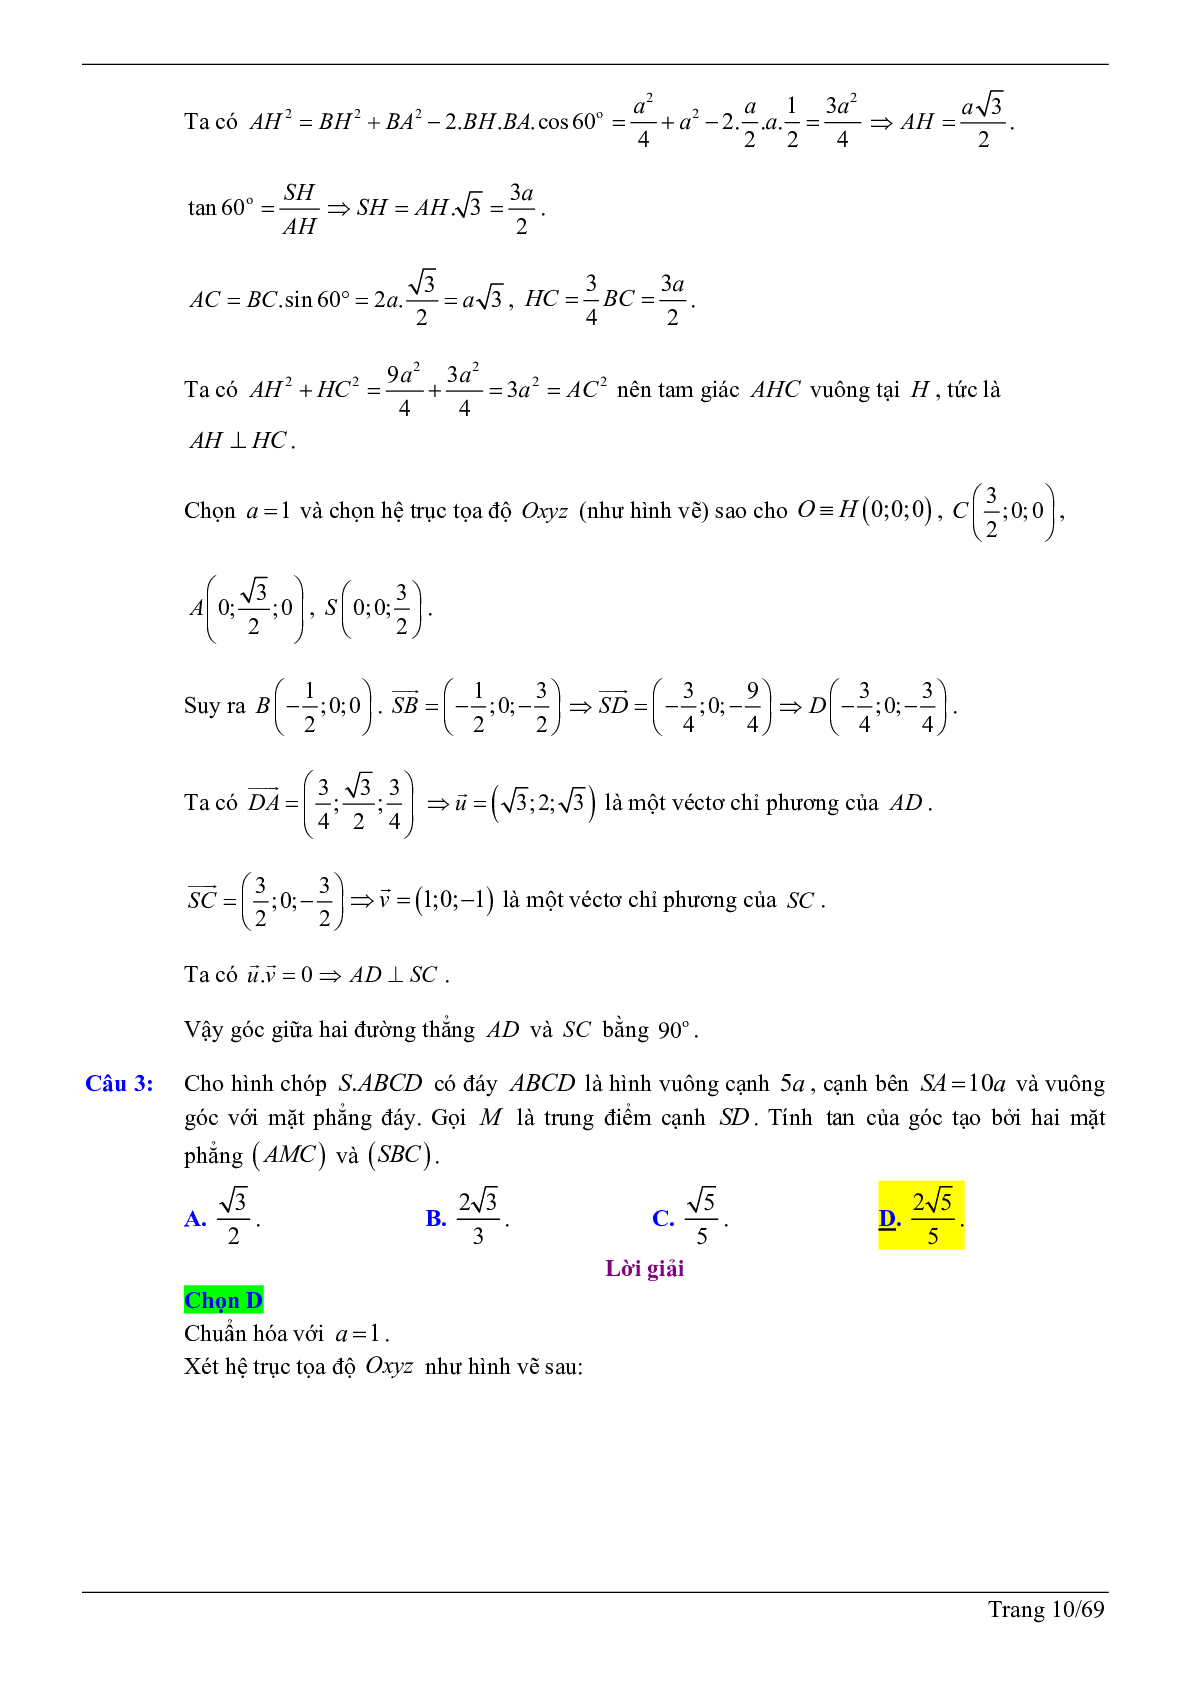 50 câu trắc nghiệm sử dụng phương pháp tọa độ giải bài toán hình học không gian - có đáp án chi tiết (trang 10)